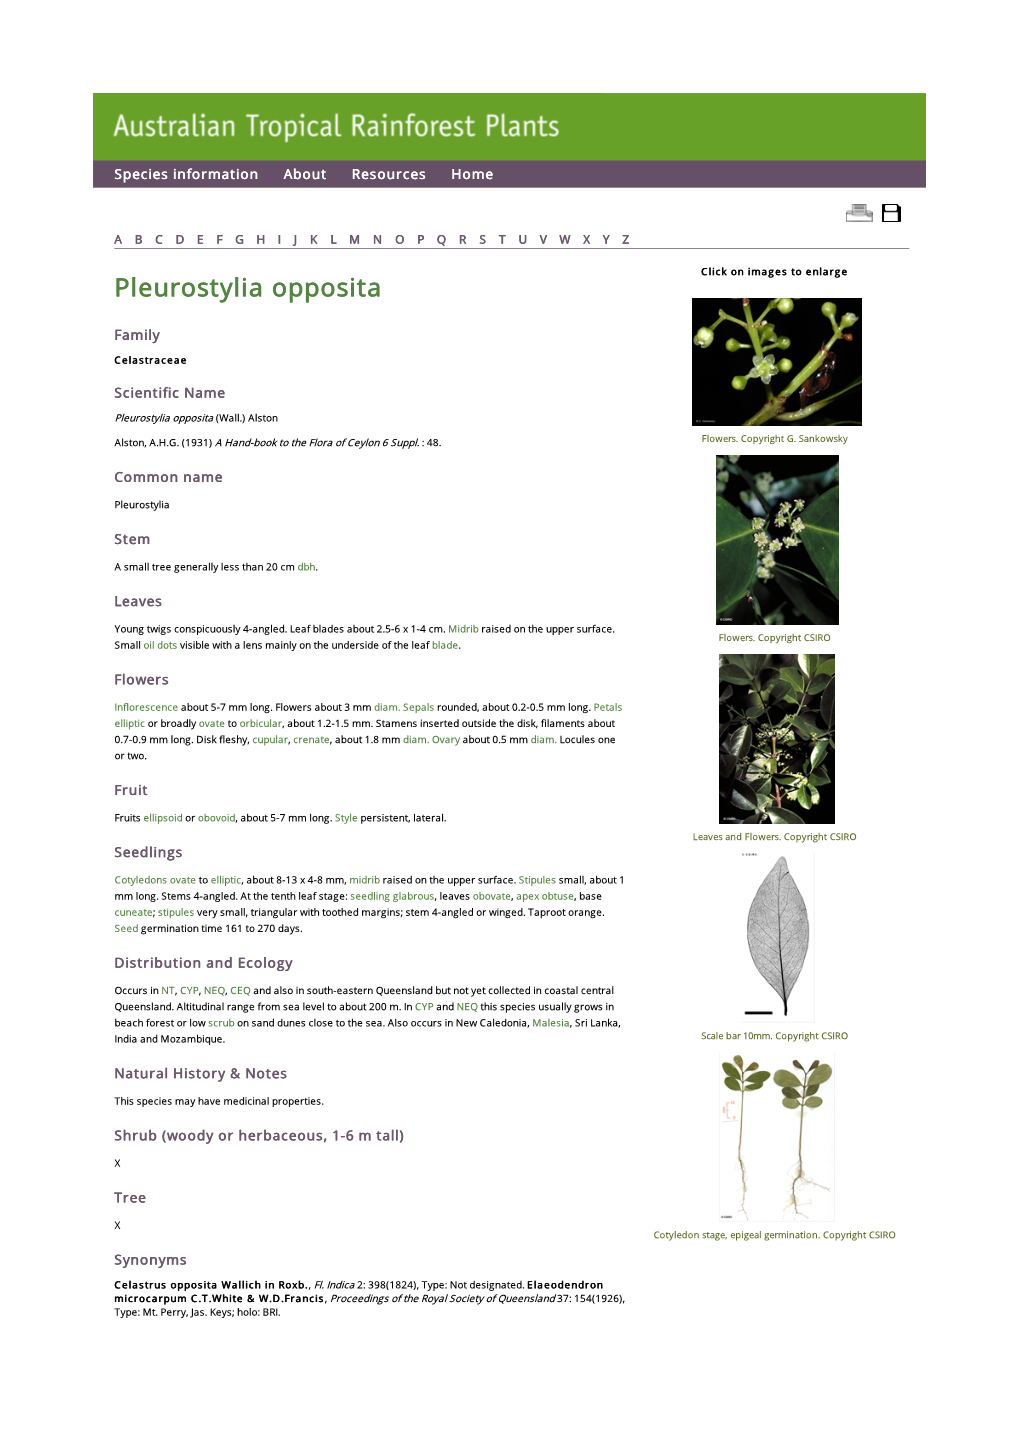 Pleurostylia Opposita Click on Images to Enlarge